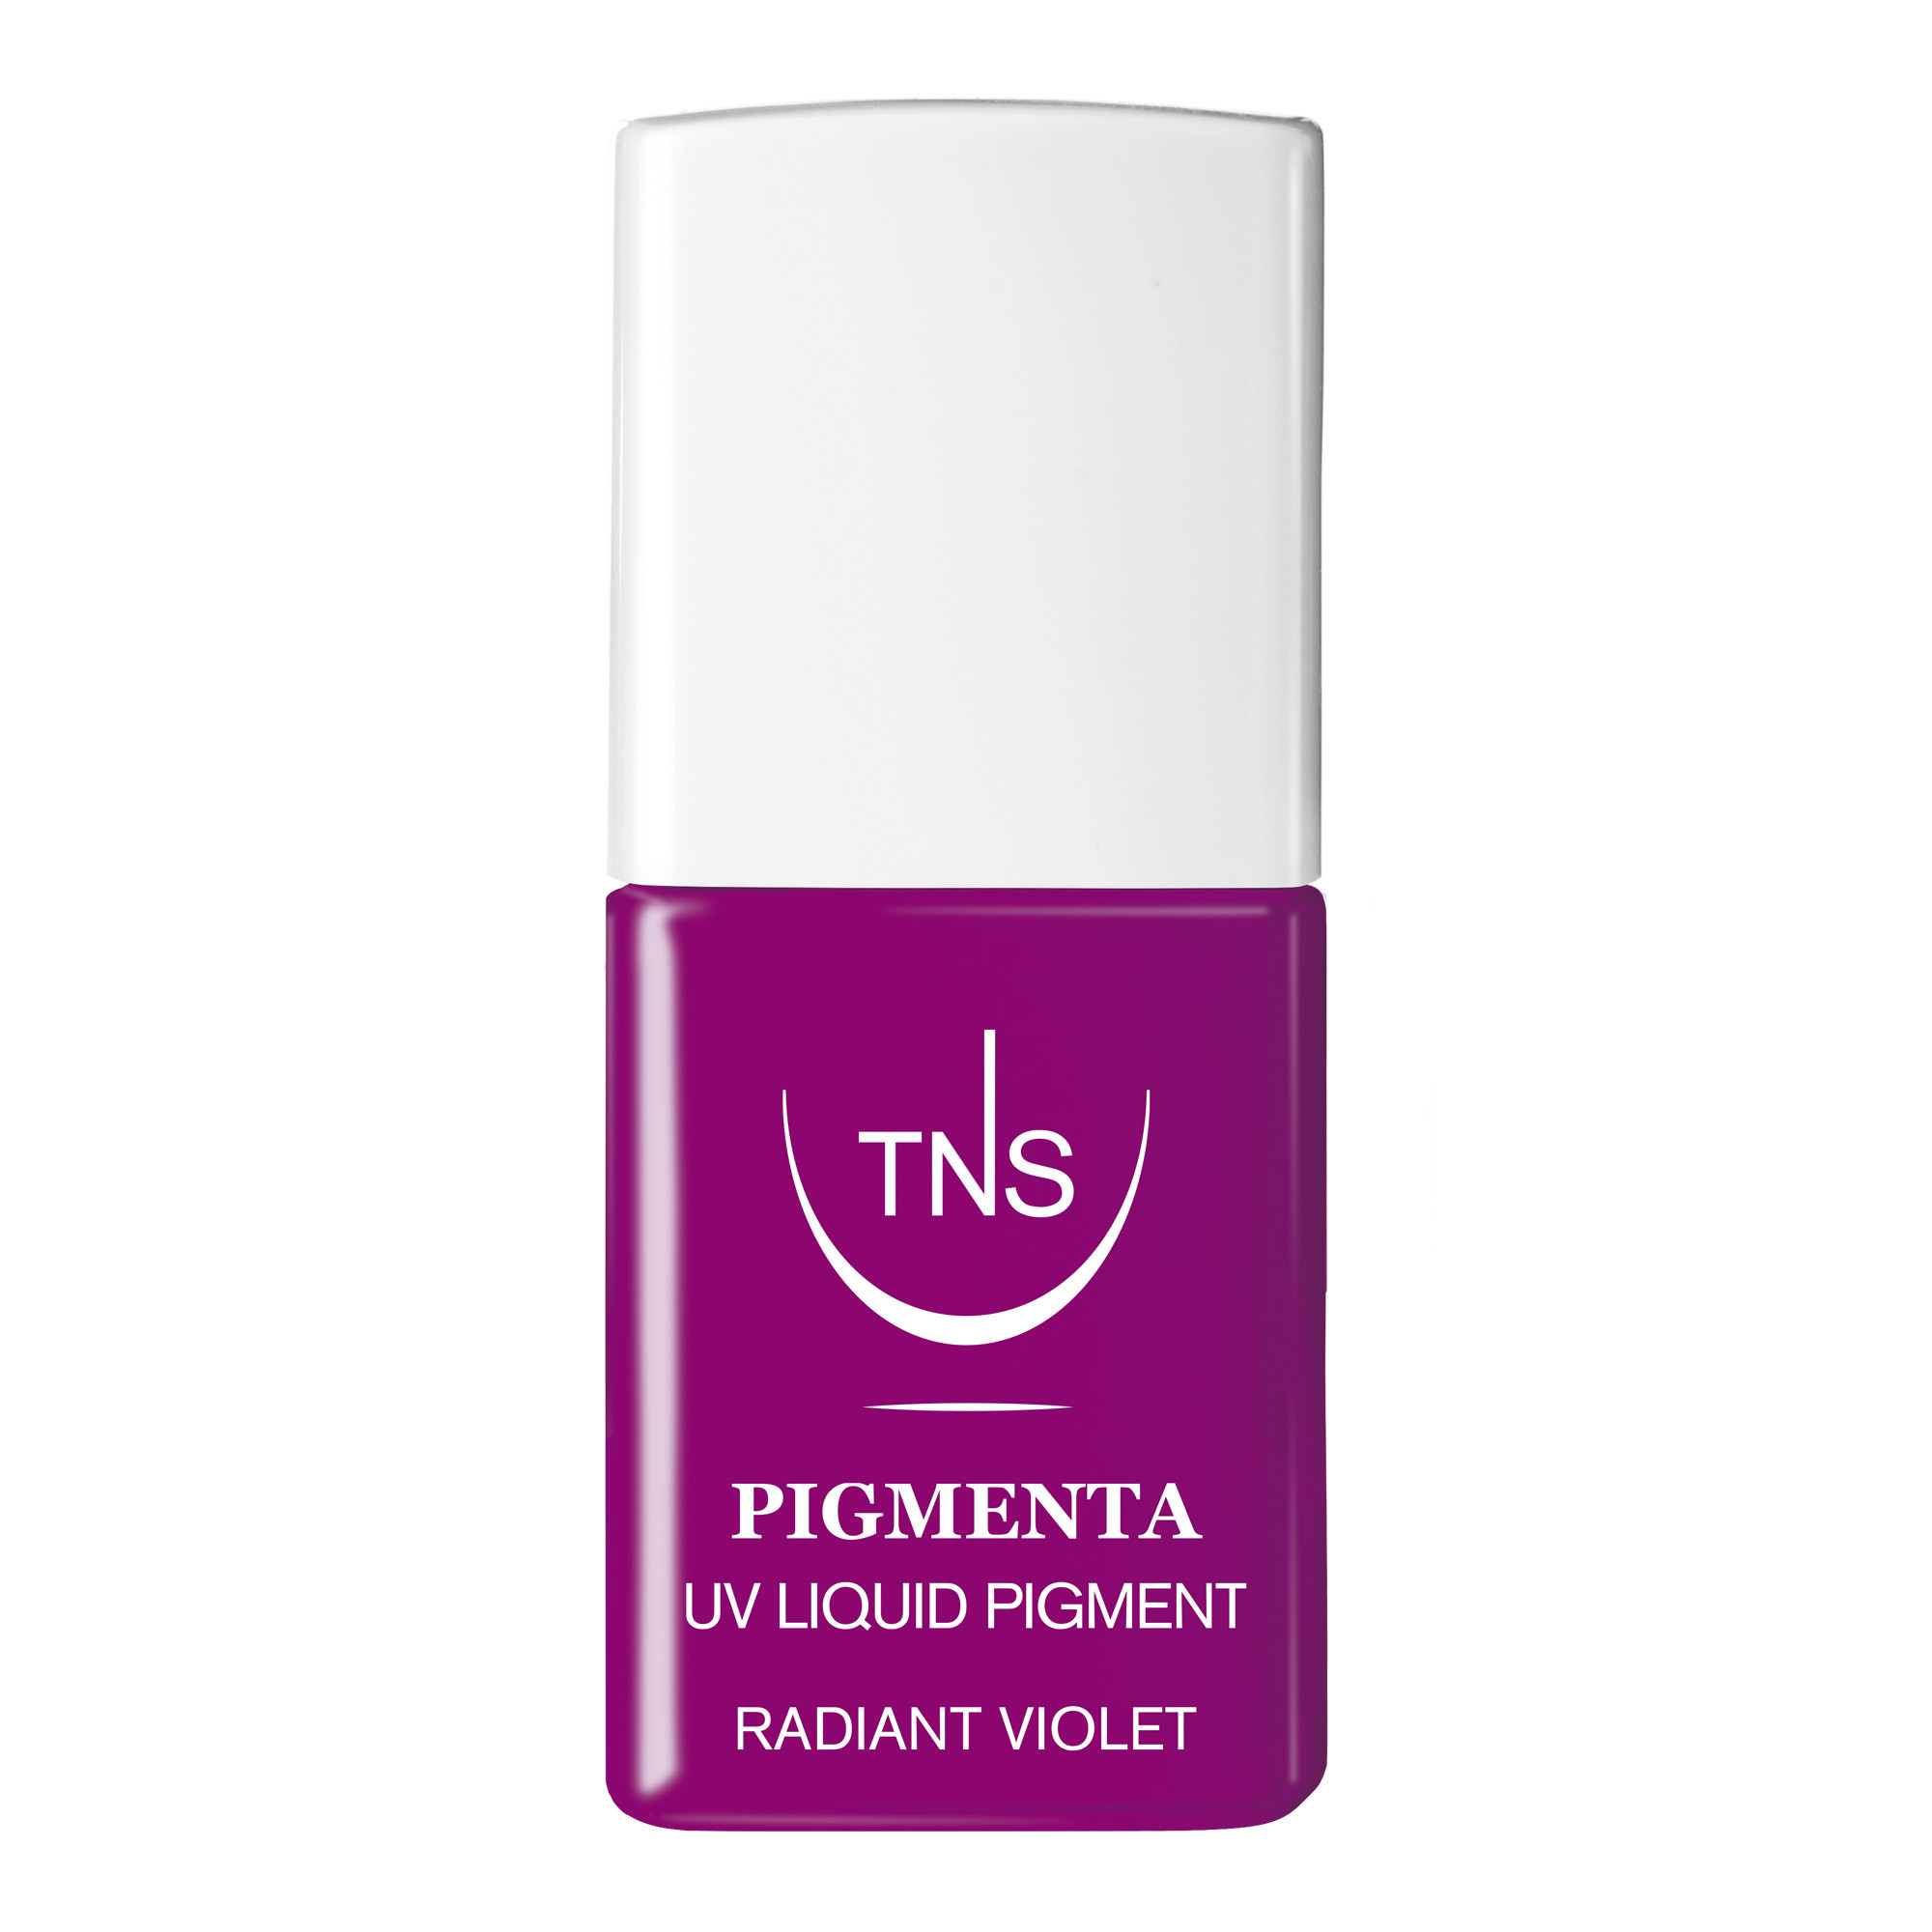 Pigmento Liquido UV Radiant Violet viola chiaro 10 ml Pigmenta TNS